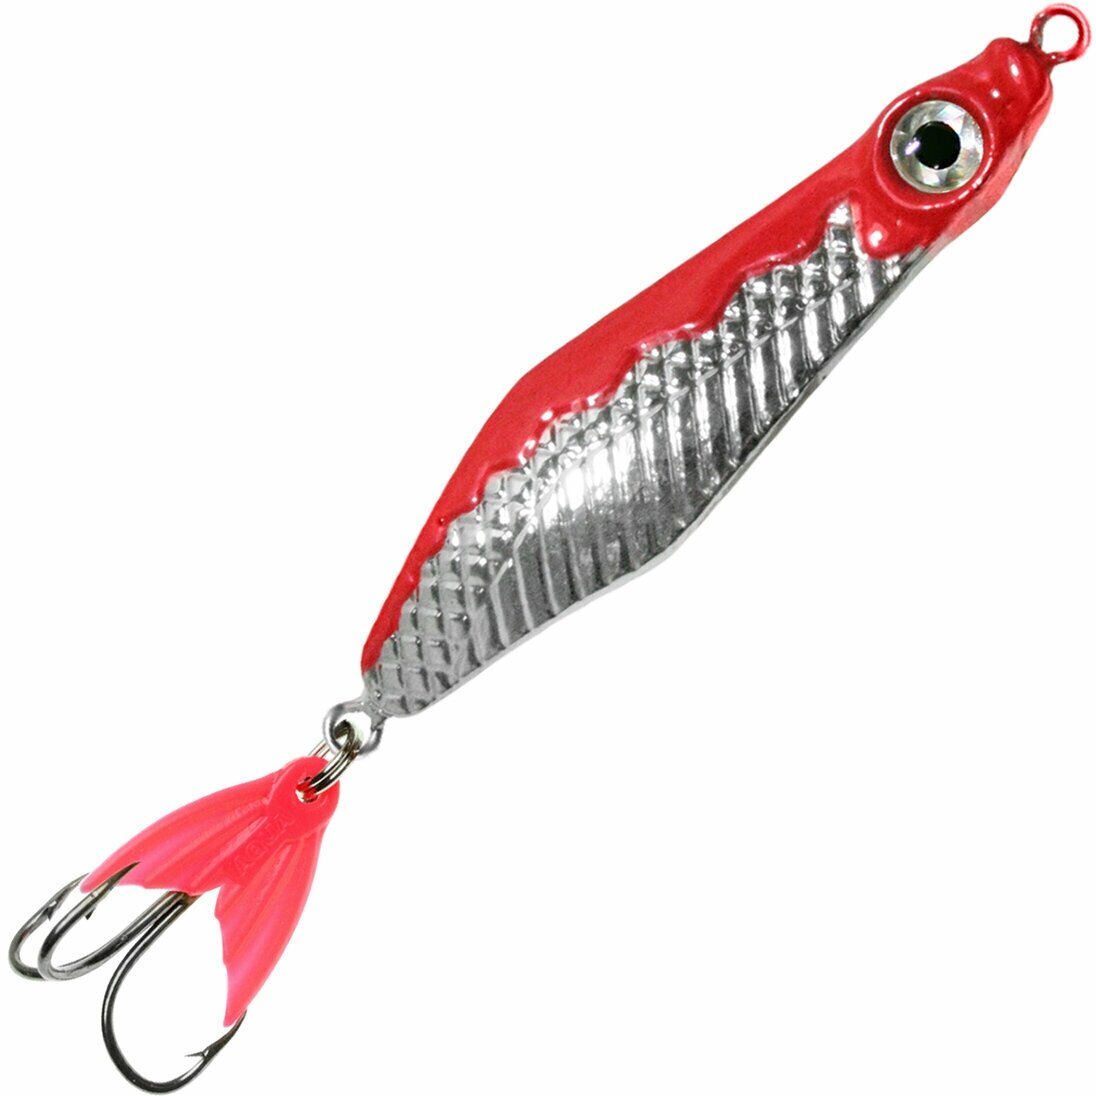 Блесна для рыбалки AQUA малек 8,0g цвет 03 (серебро, красный металлик), 1 штука